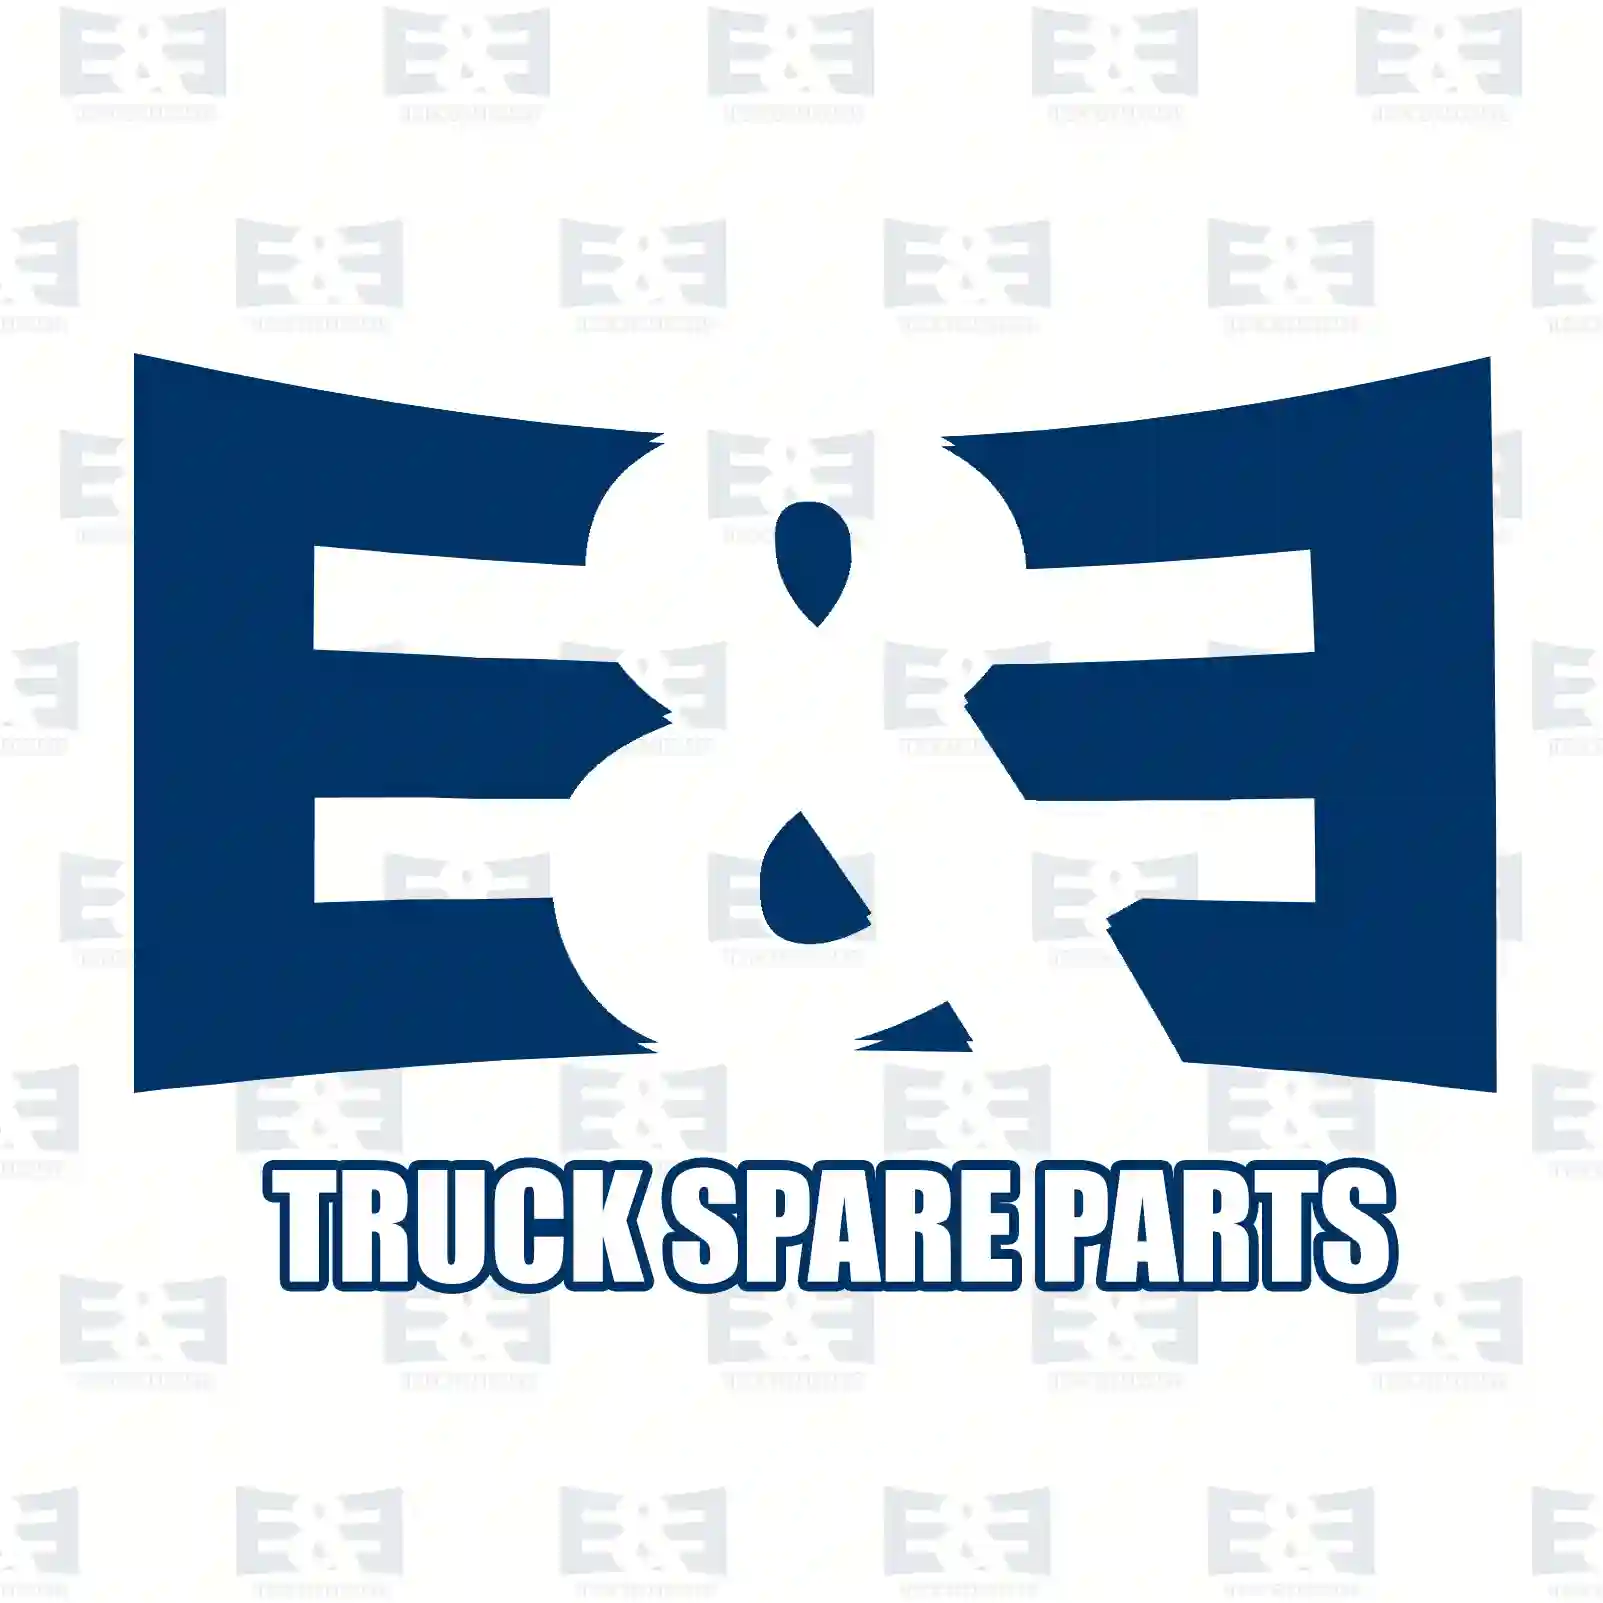 Gear, camshaft, 2E2206047, 7420450344, 20450344, 8170574, , , ||  2E2206047 E&E Truck Spare Parts | Truck Spare Parts, Auotomotive Spare Parts Gear, camshaft, 2E2206047, 7420450344, 20450344, 8170574, , , ||  2E2206047 E&E Truck Spare Parts | Truck Spare Parts, Auotomotive Spare Parts